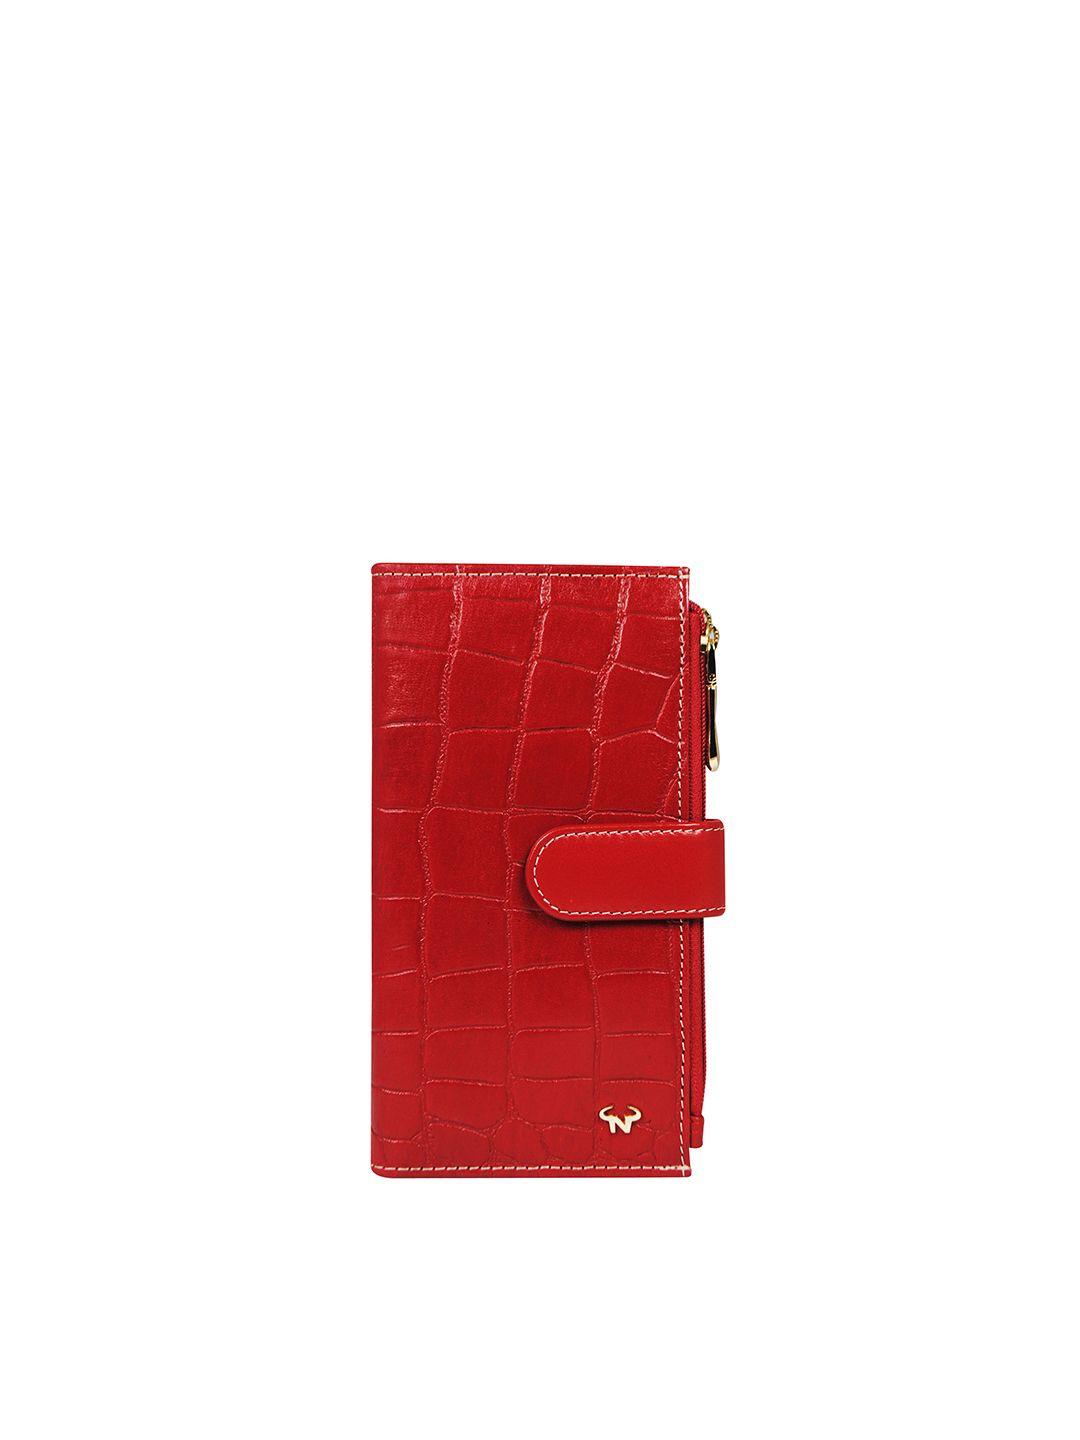 calfnero women red textured purse clutch